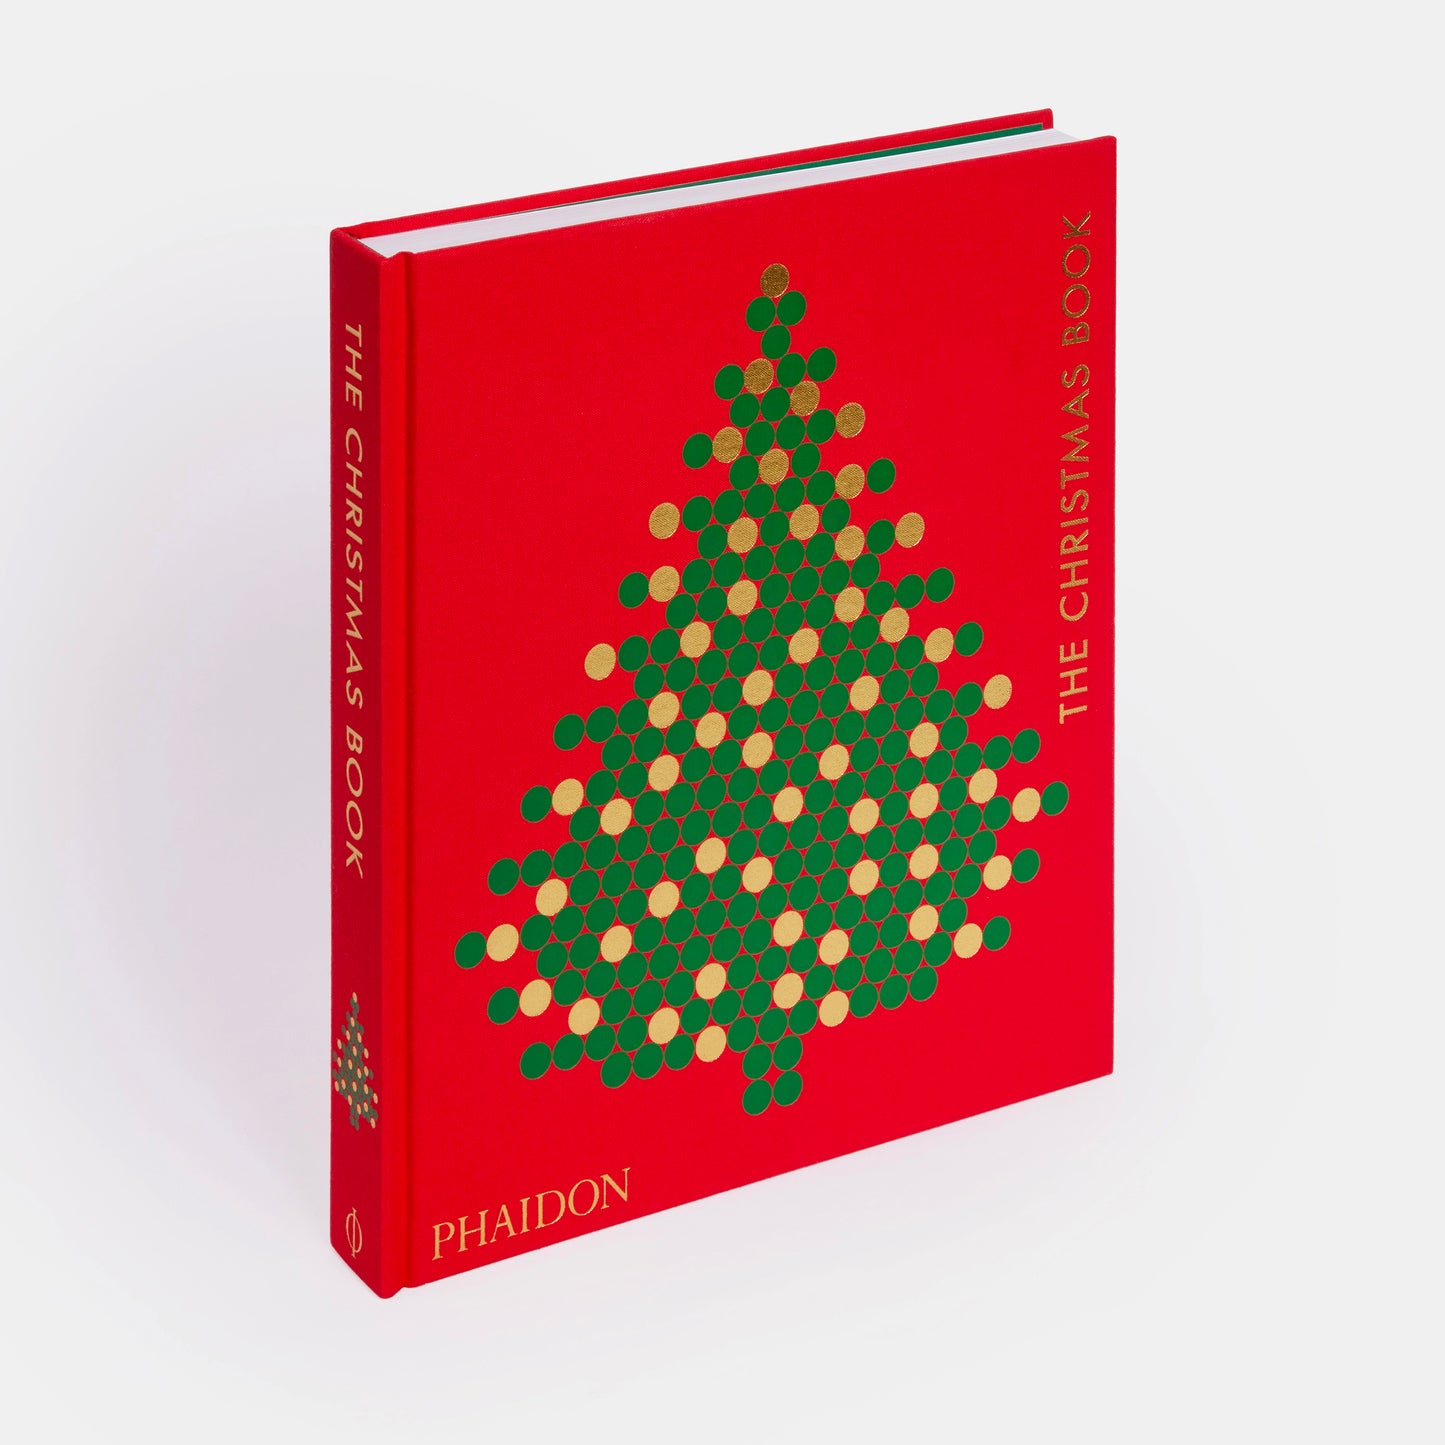 The Christmas Book